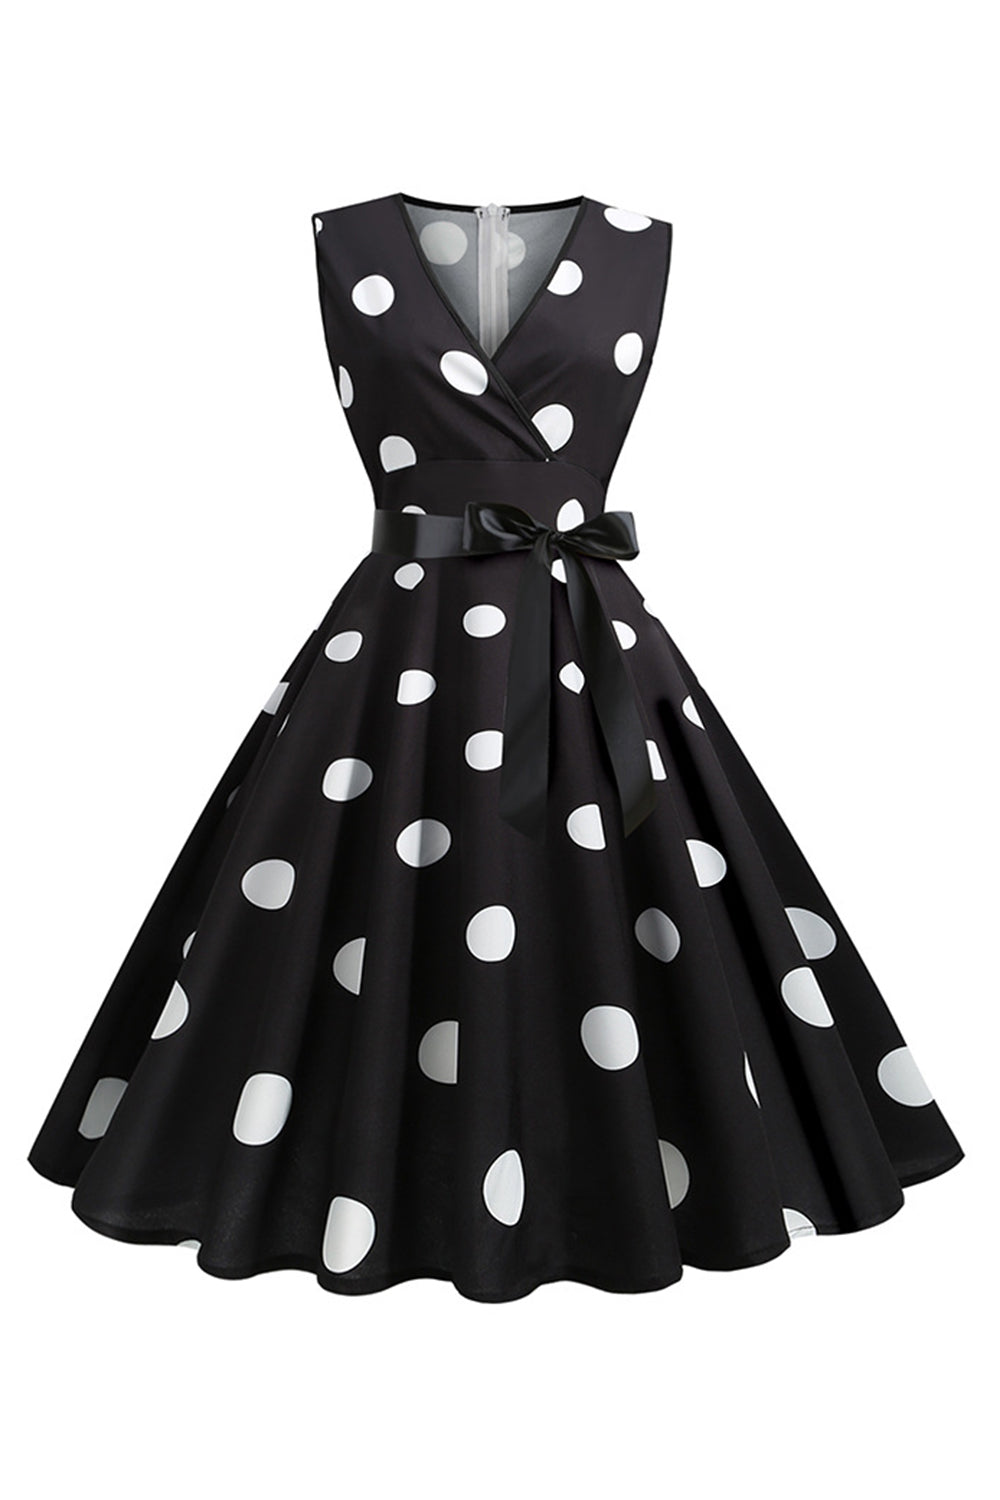 Light Blue Polka Dots Vintage 1950s Dress